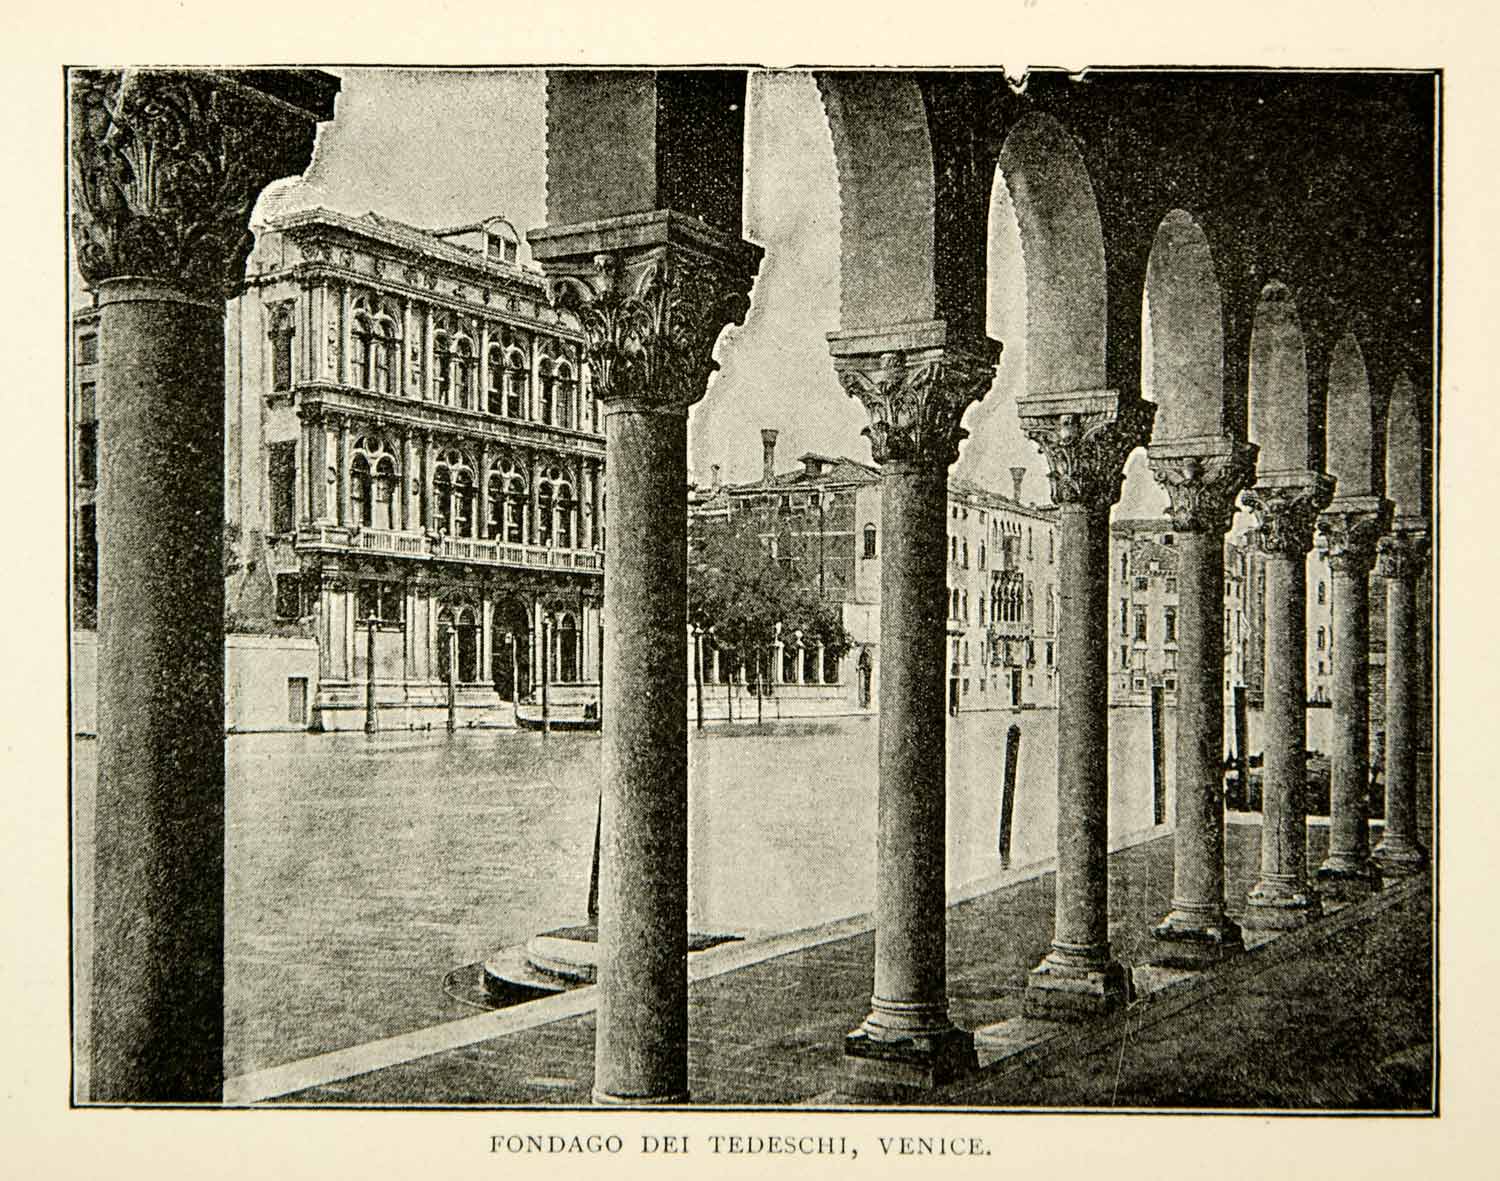 1893 Print Fondago dei Tedechi Venice Italy Architecture Canal Cityscape XENA5